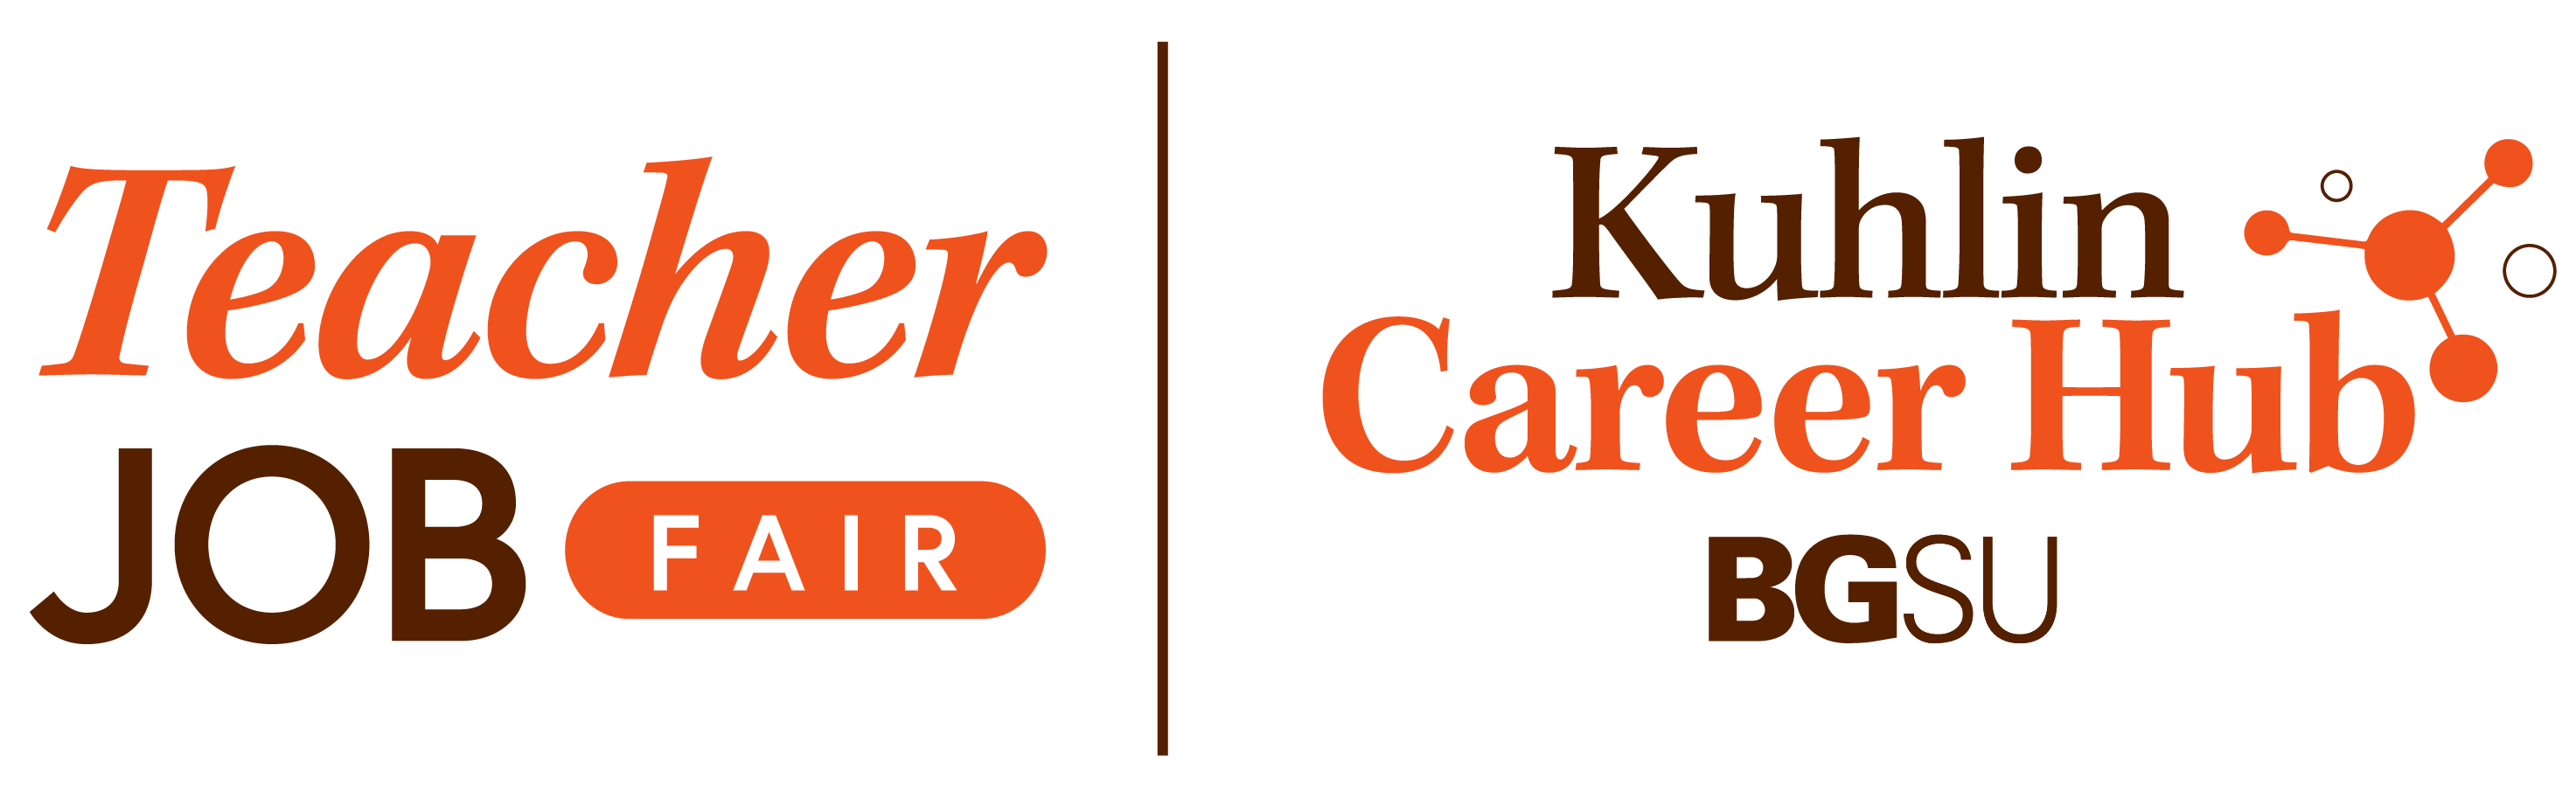 Teacher Job Fair | Kuhlin Career Hub BGSU Logo